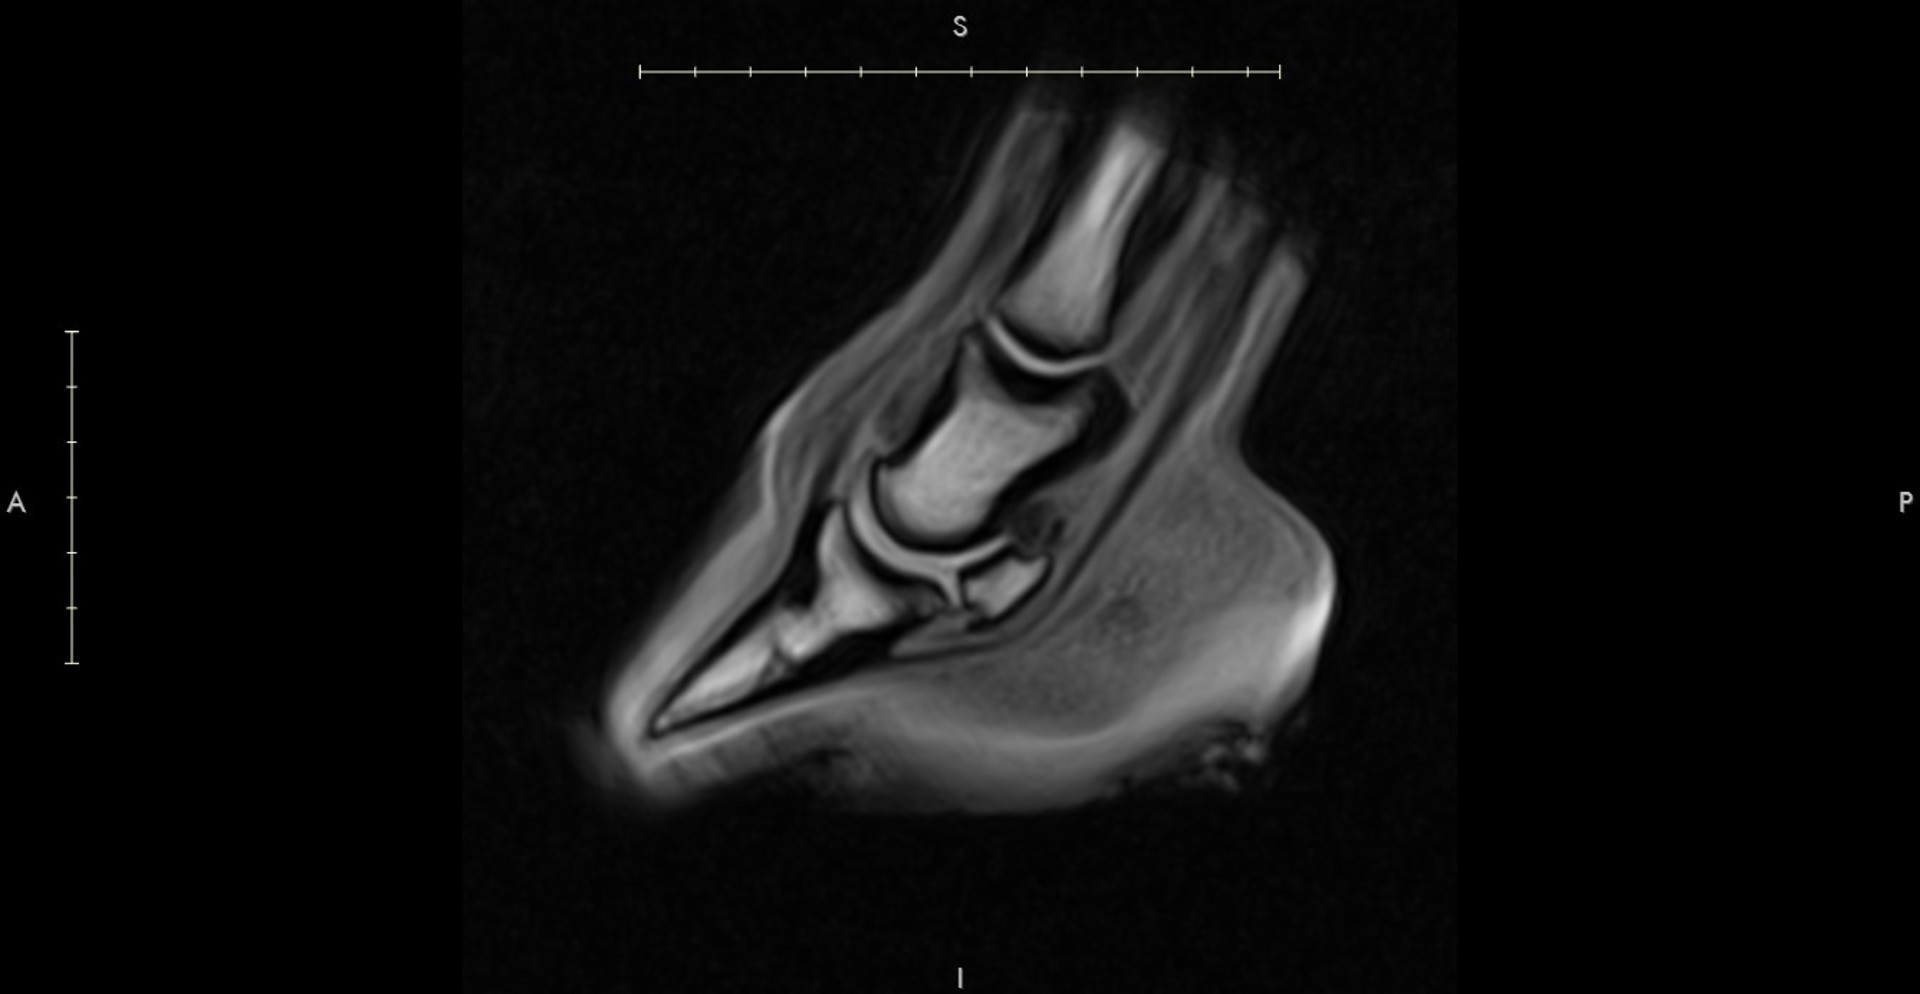 Background image - MRI